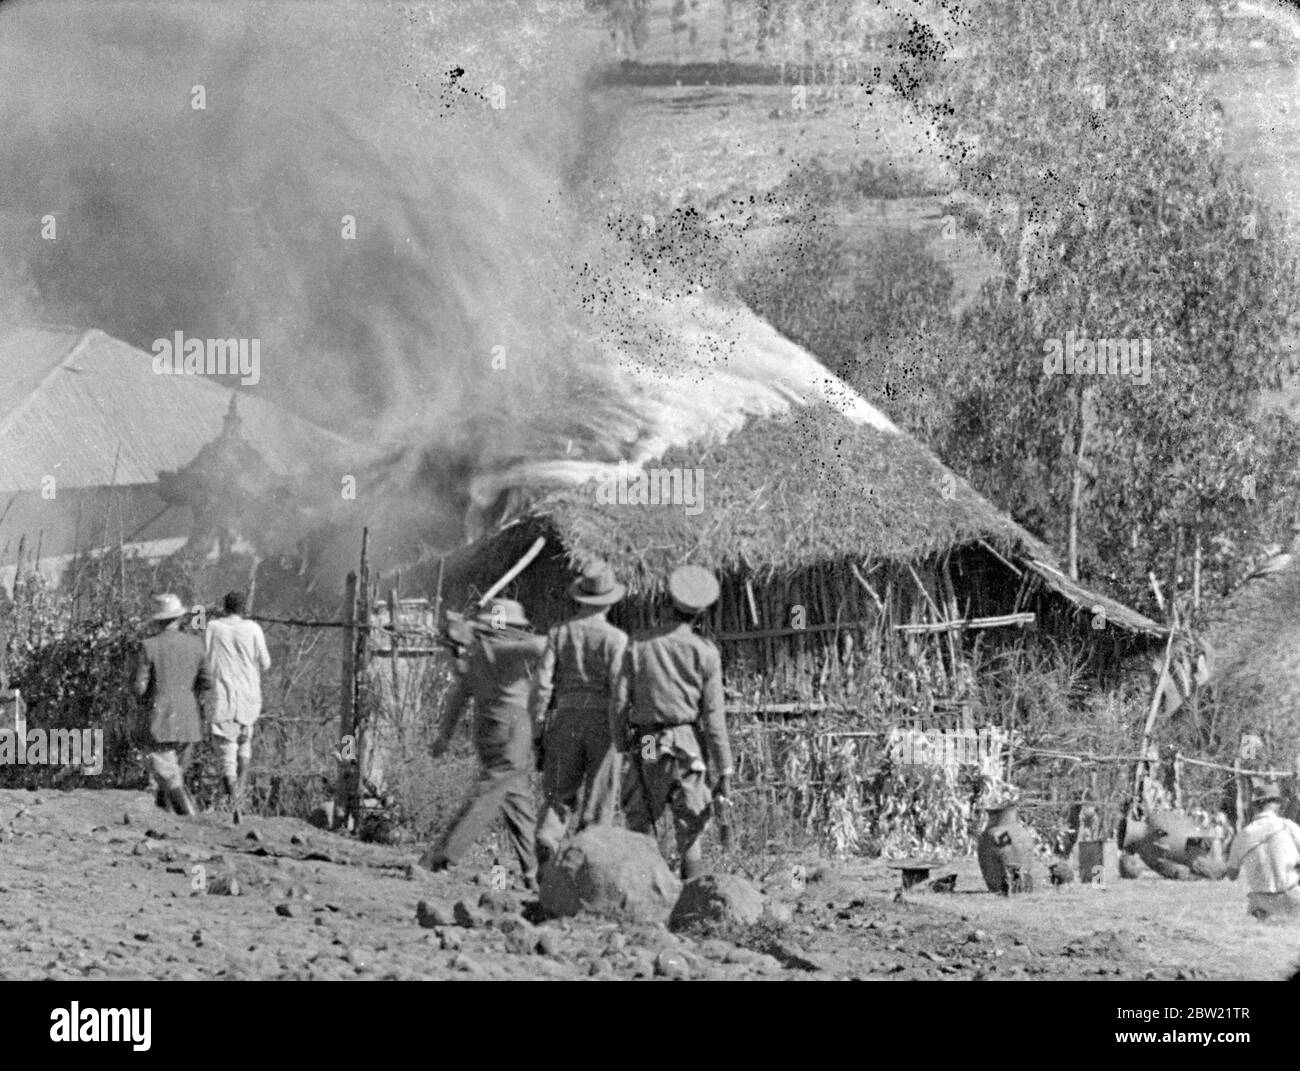 Italienischer Äthiopienkrieg, 1935 -1936 die Bombardierung des äthiopischen Dorfes Dessye durch italienische Flugzeuge. Dorfhütten in Brand .. Dezember 1935 Stockfoto